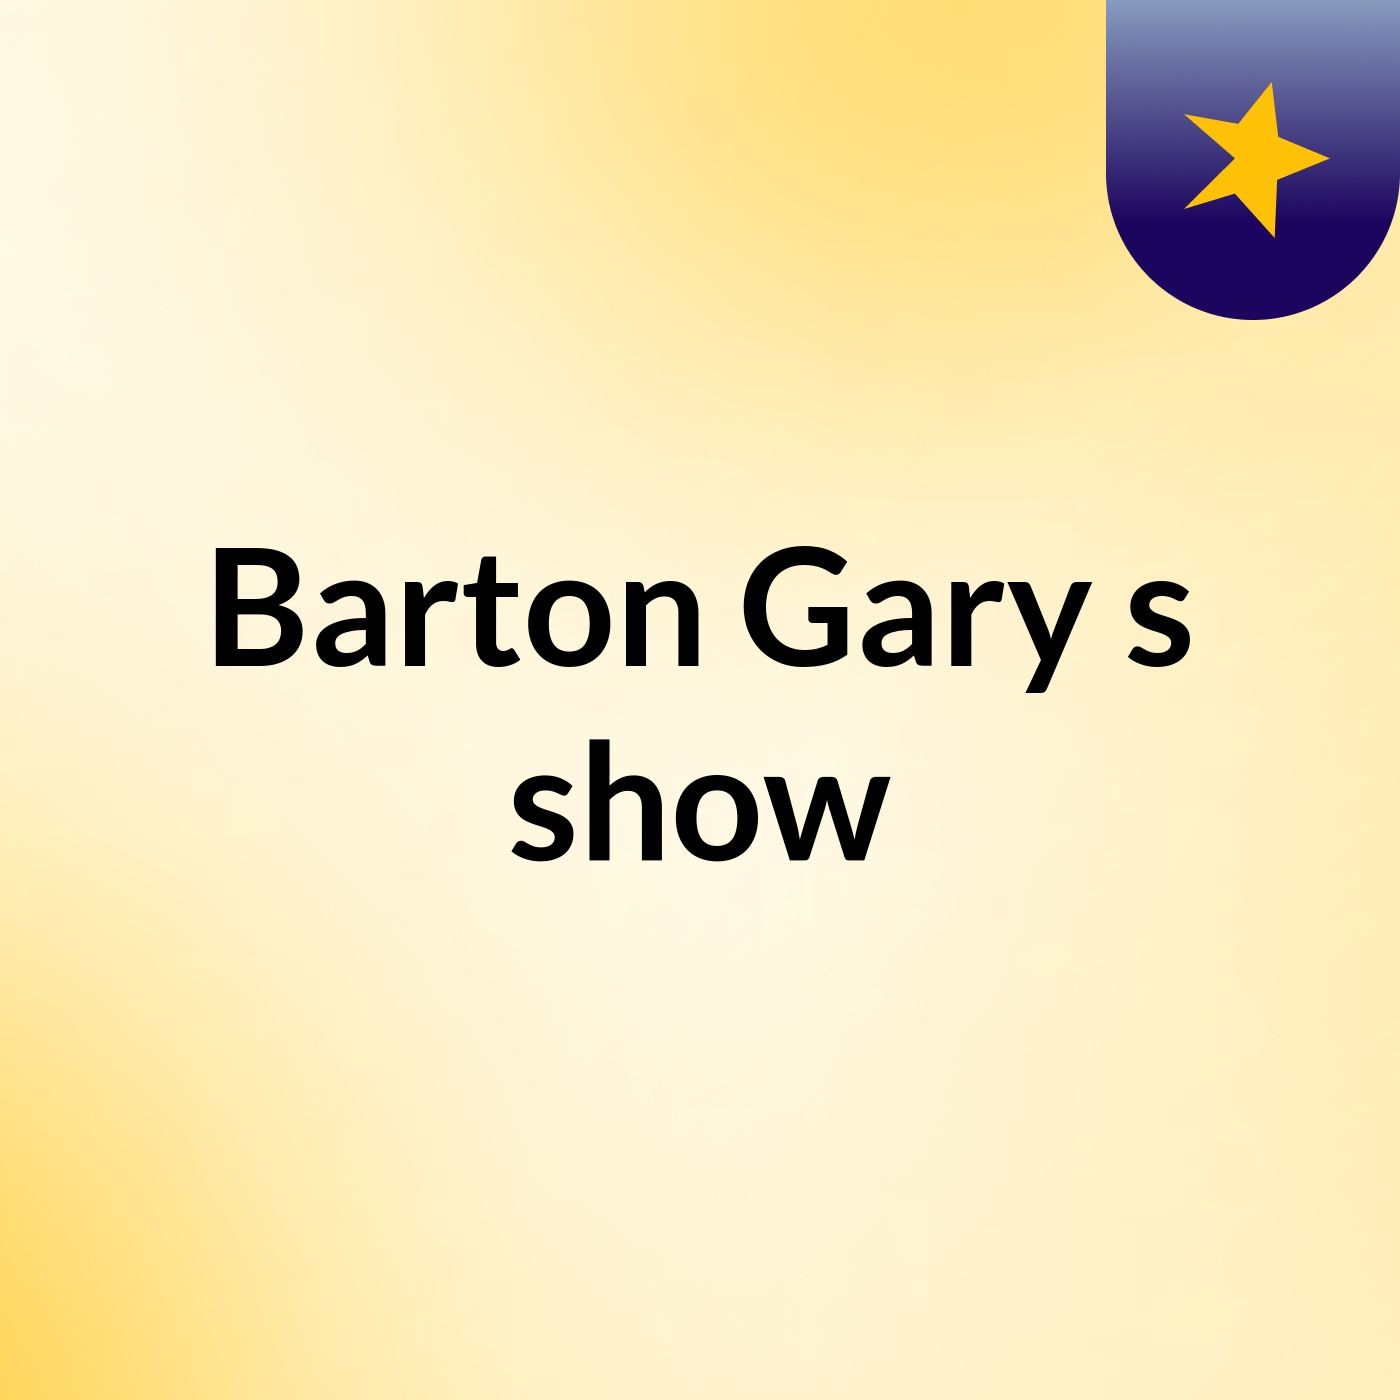 Episode 9 - Barton Gary's show